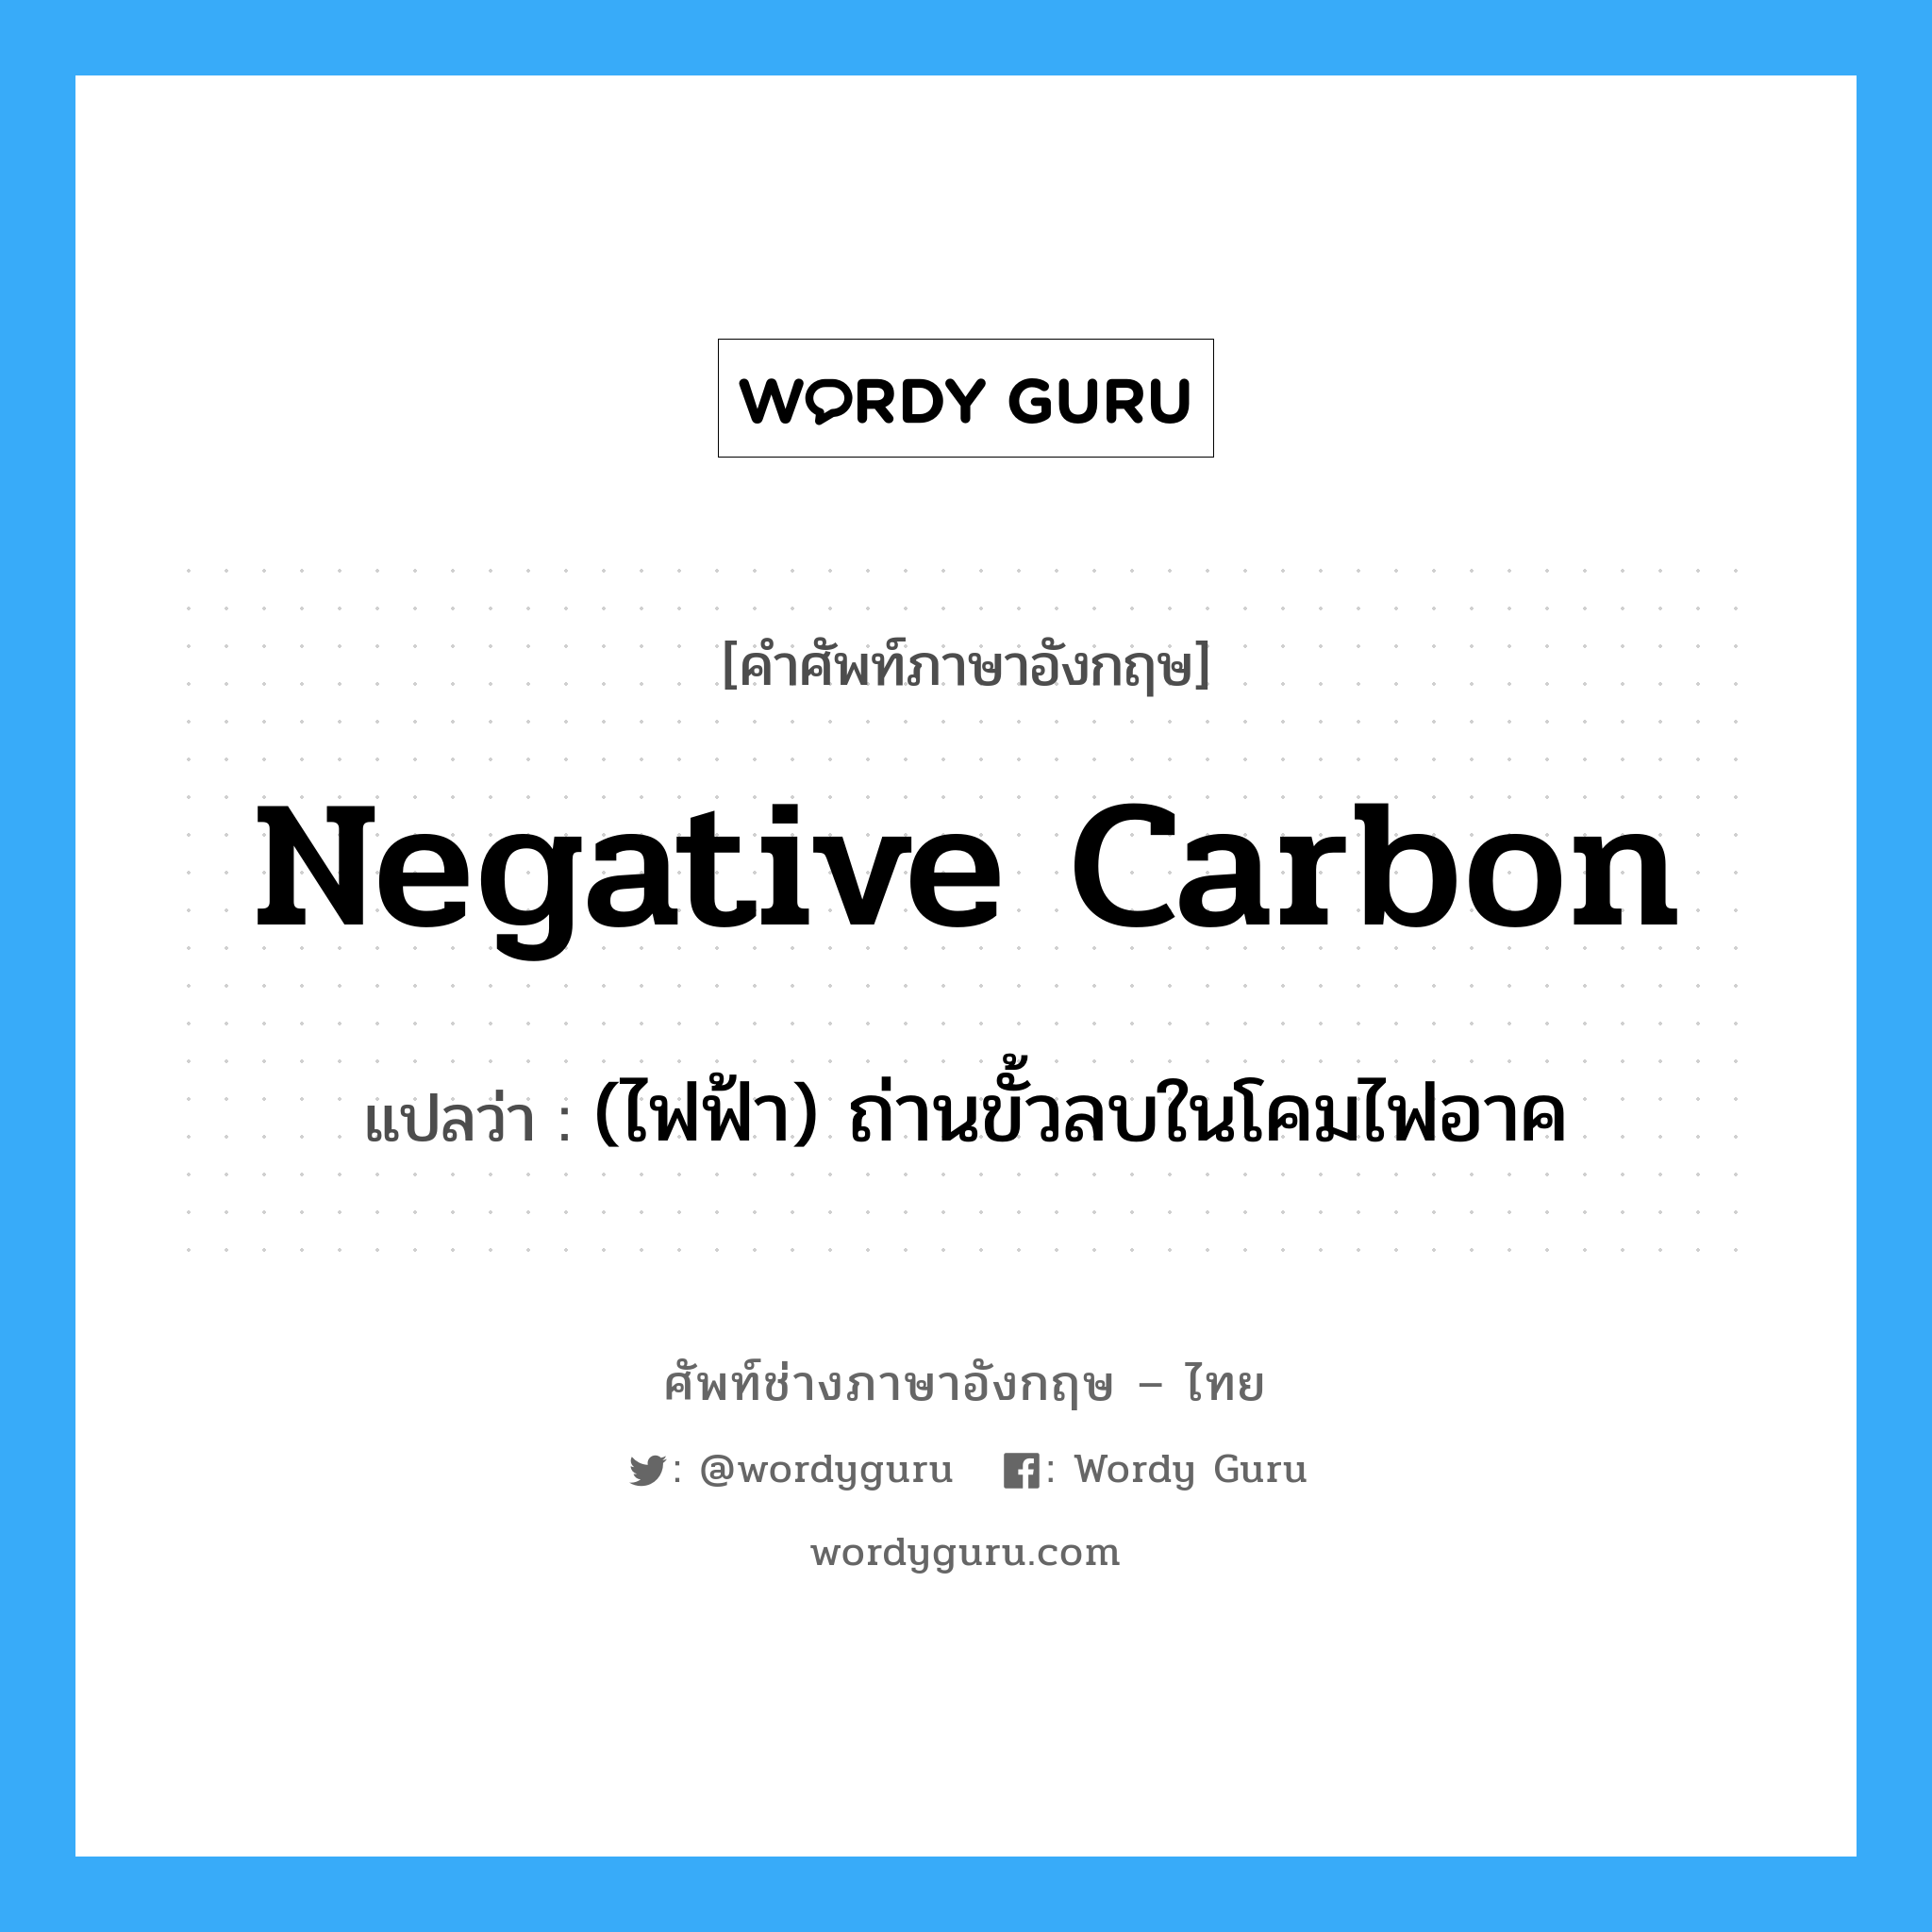 (ไฟฟ้า) ถ่านขั้วลบในโคมไฟอาค ภาษาอังกฤษ?, คำศัพท์ช่างภาษาอังกฤษ - ไทย (ไฟฟ้า) ถ่านขั้วลบในโคมไฟอาค คำศัพท์ภาษาอังกฤษ (ไฟฟ้า) ถ่านขั้วลบในโคมไฟอาค แปลว่า negative carbon